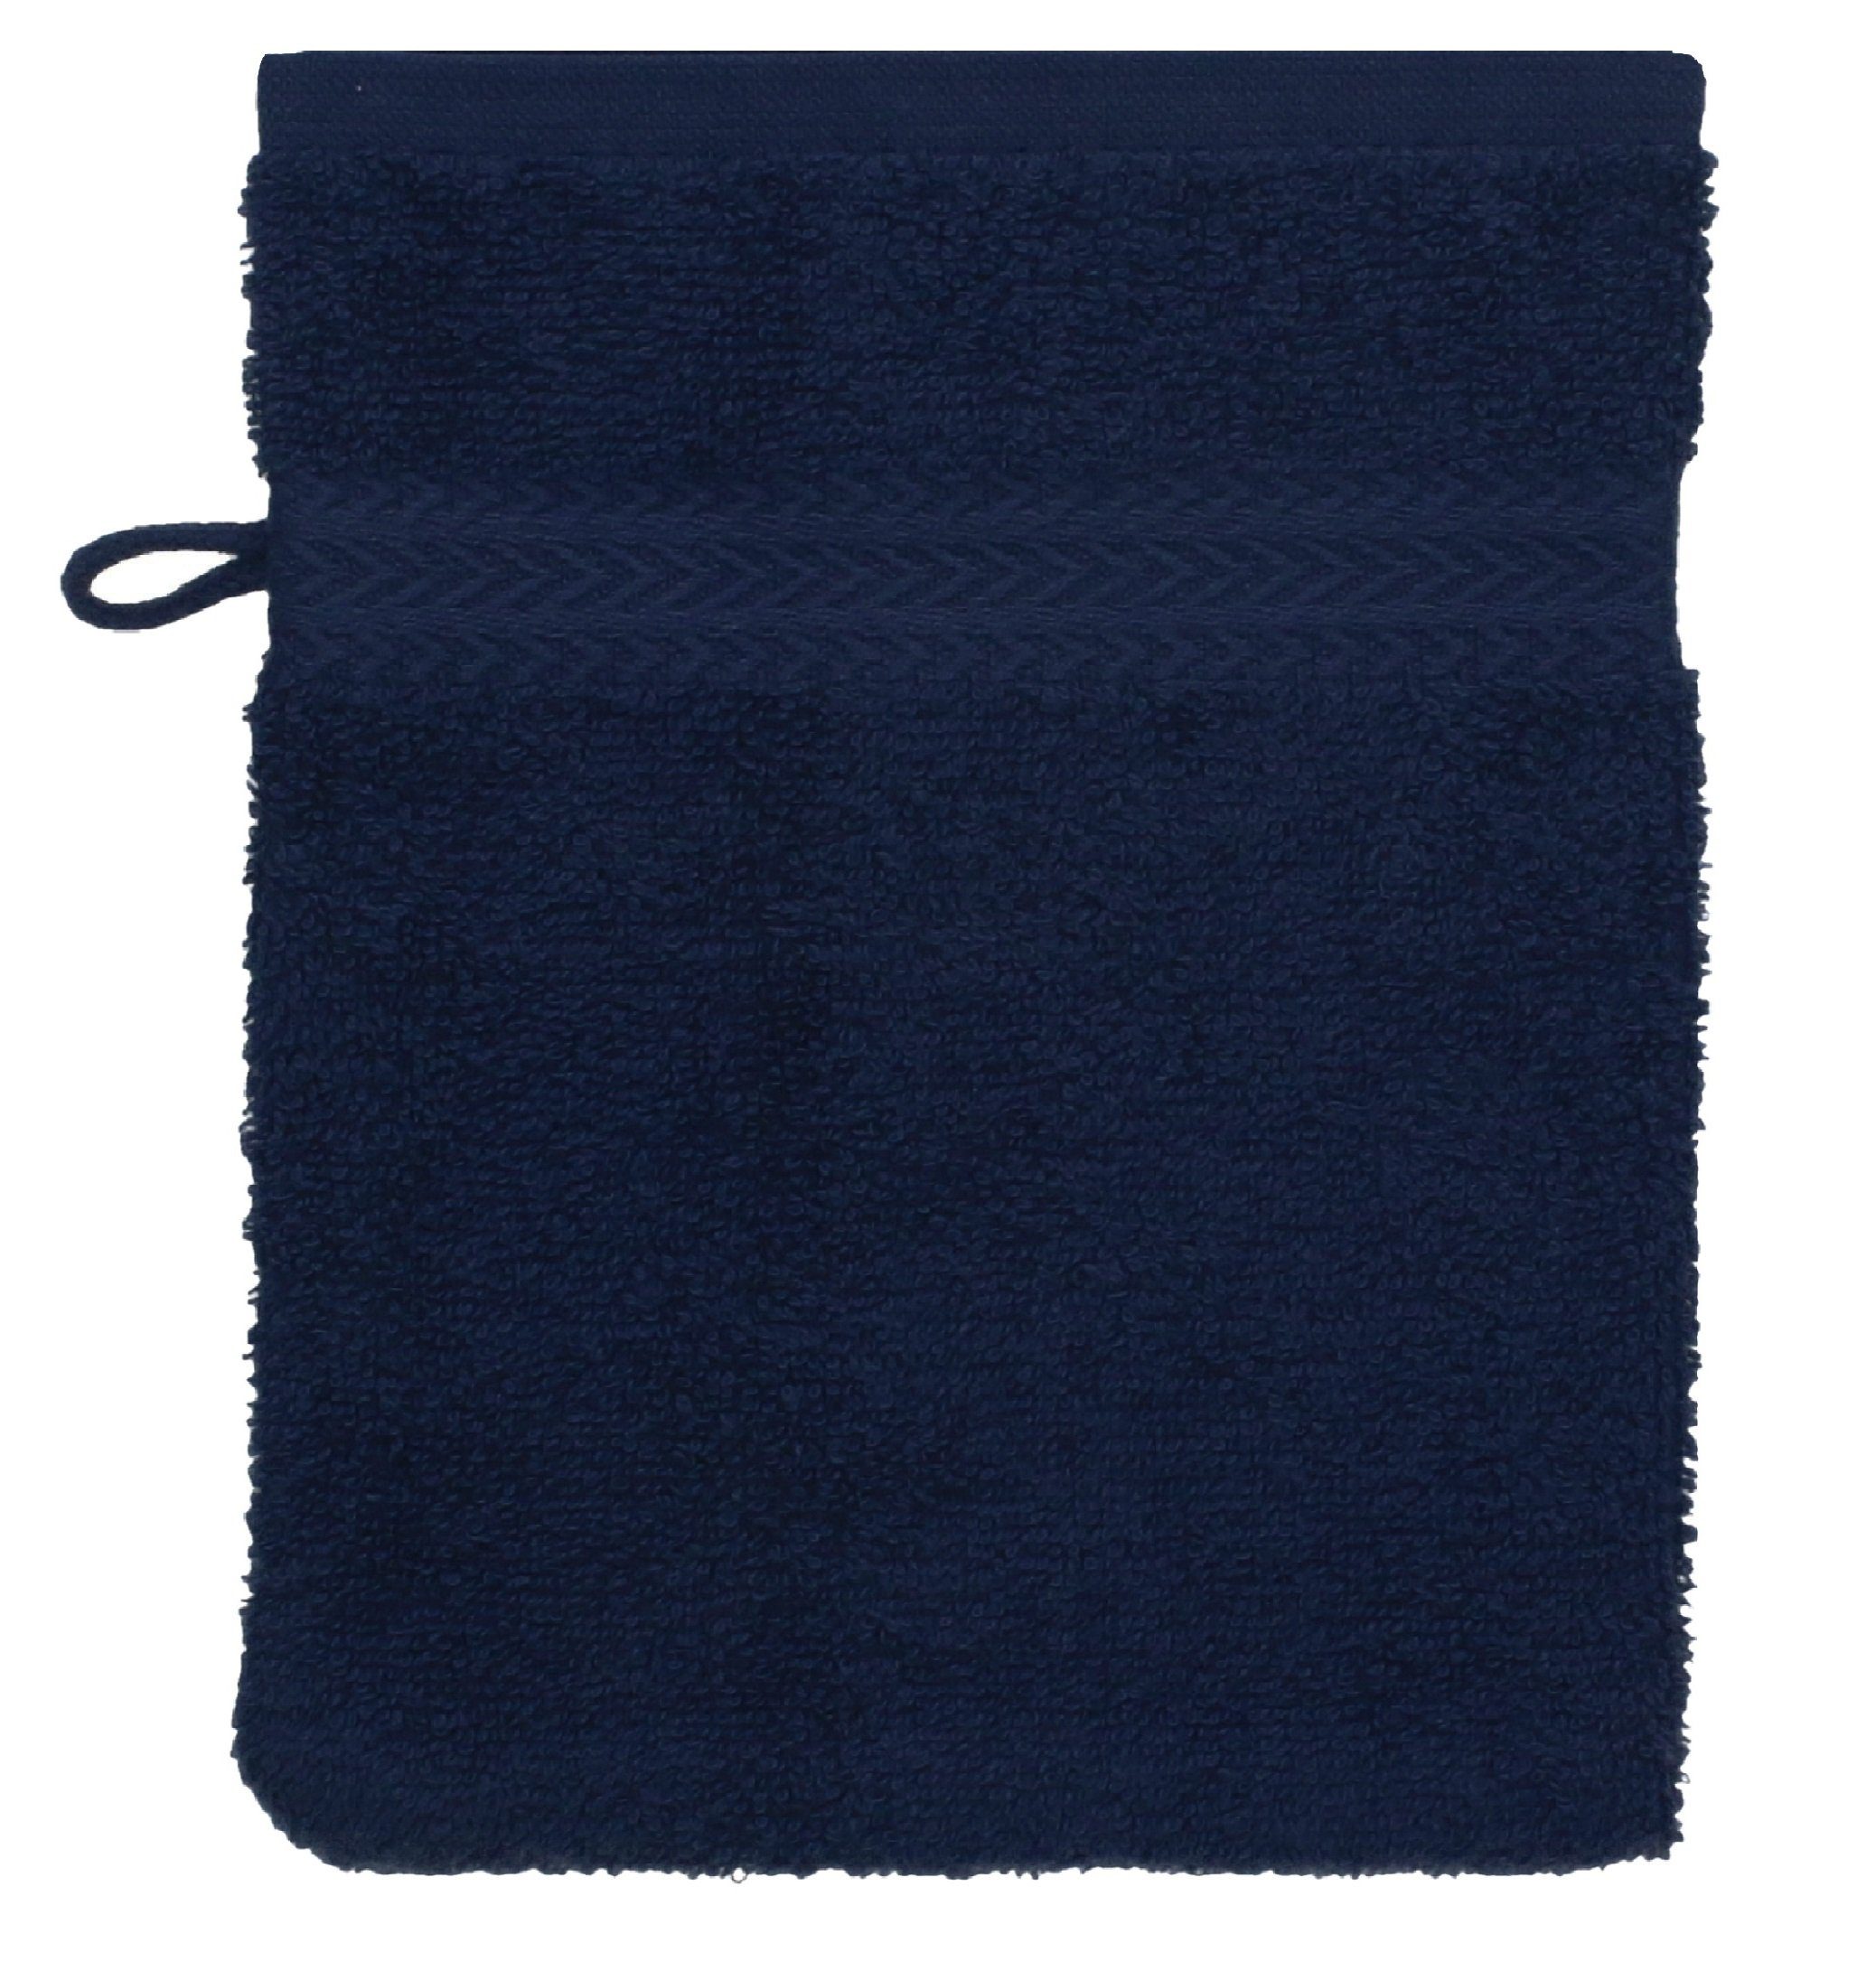 Betz Waschhandschuh 10 Stück Waschhandschuhe und Farbe Premium Waschlappen Royalblau 100% Baumwolle Set dunkelblau cm 16x21